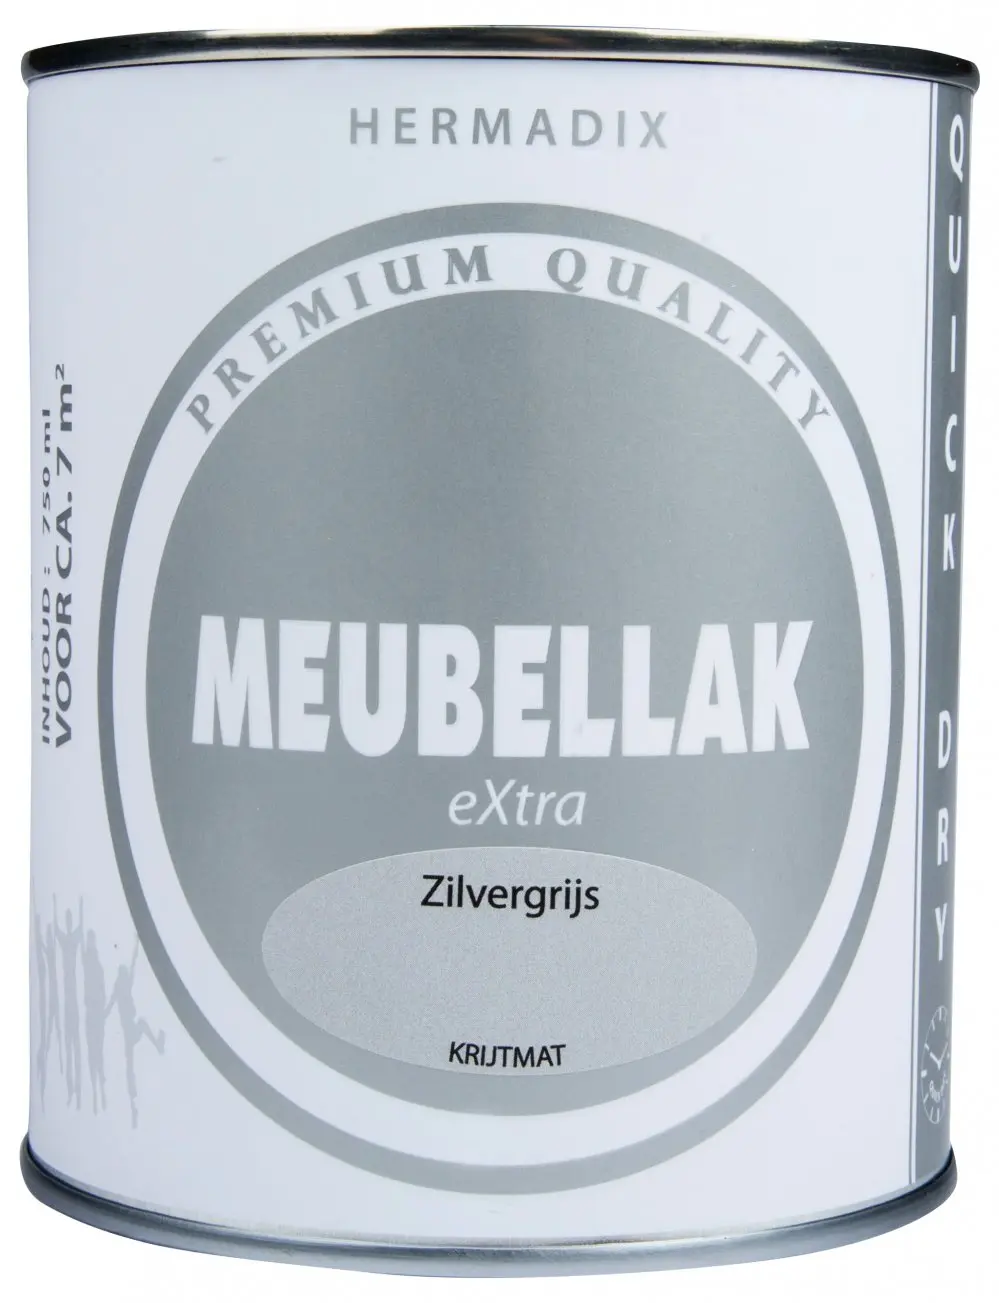 Hermadix - hermadix-meubellak-extra-zilvergrijs-krijtmat-verfcompleet